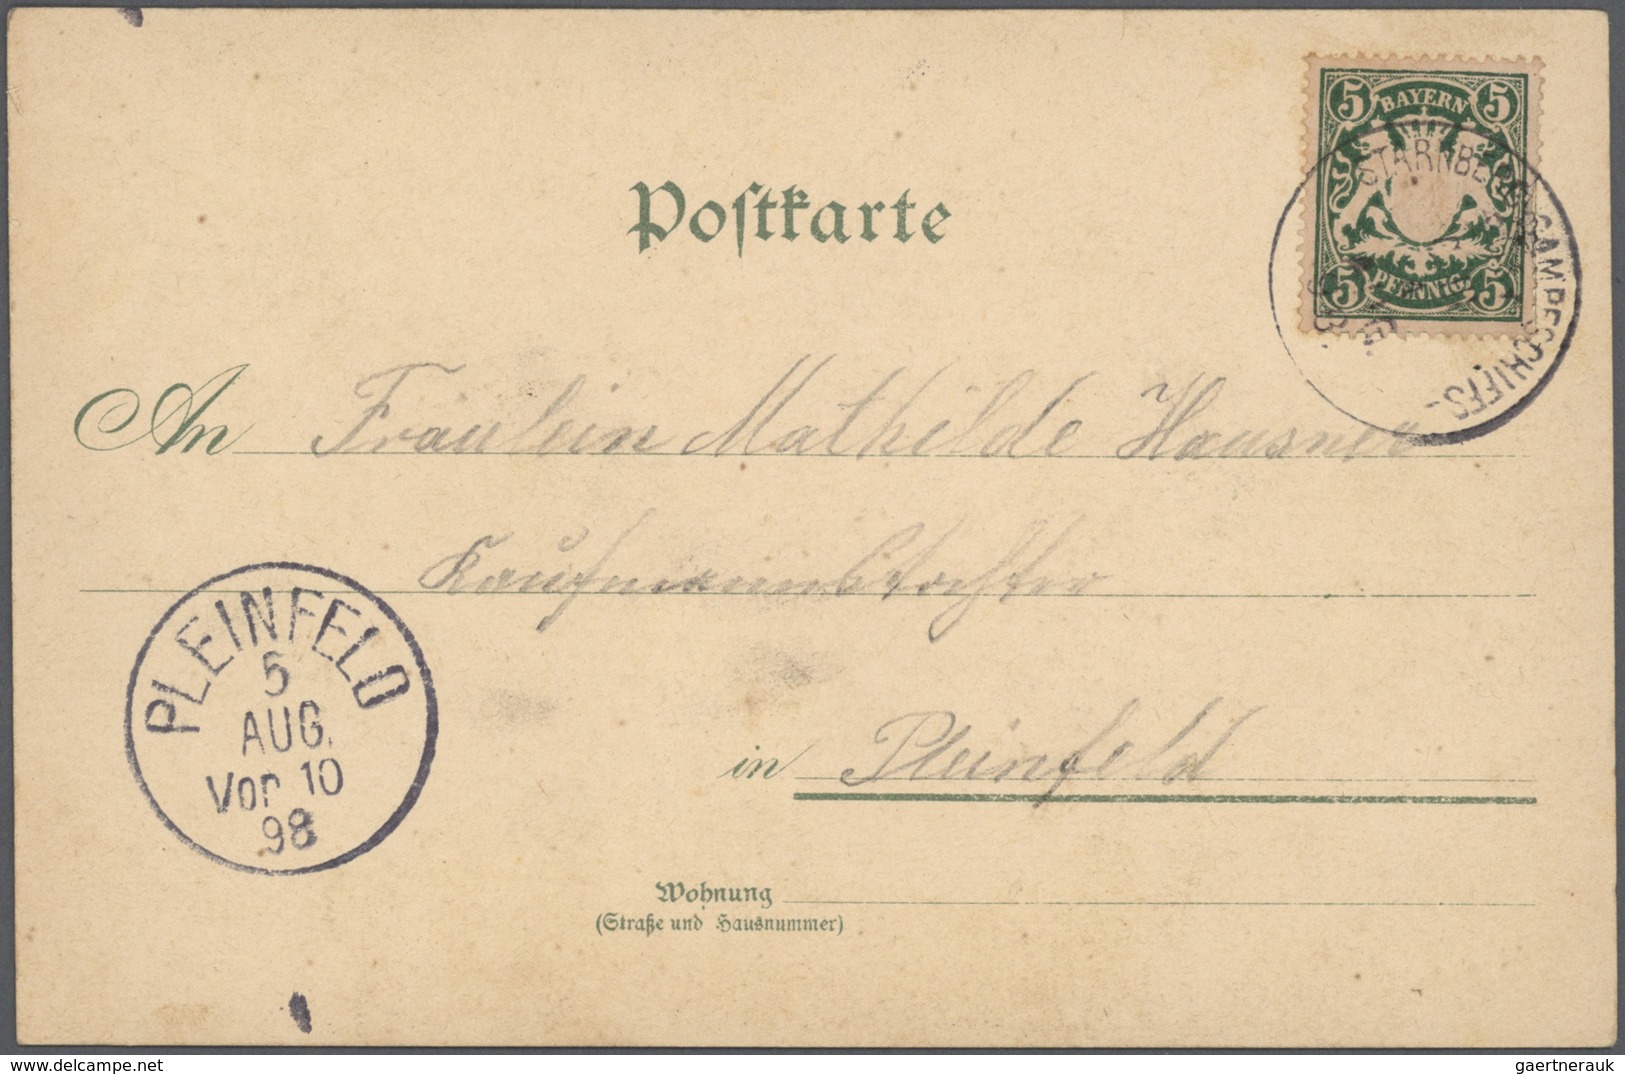 24852 Schiffspost Deutschland: ab 1896 Partie Schiffahrt auf der Elbe, Donau, Rhein, sowie viele Starnberg